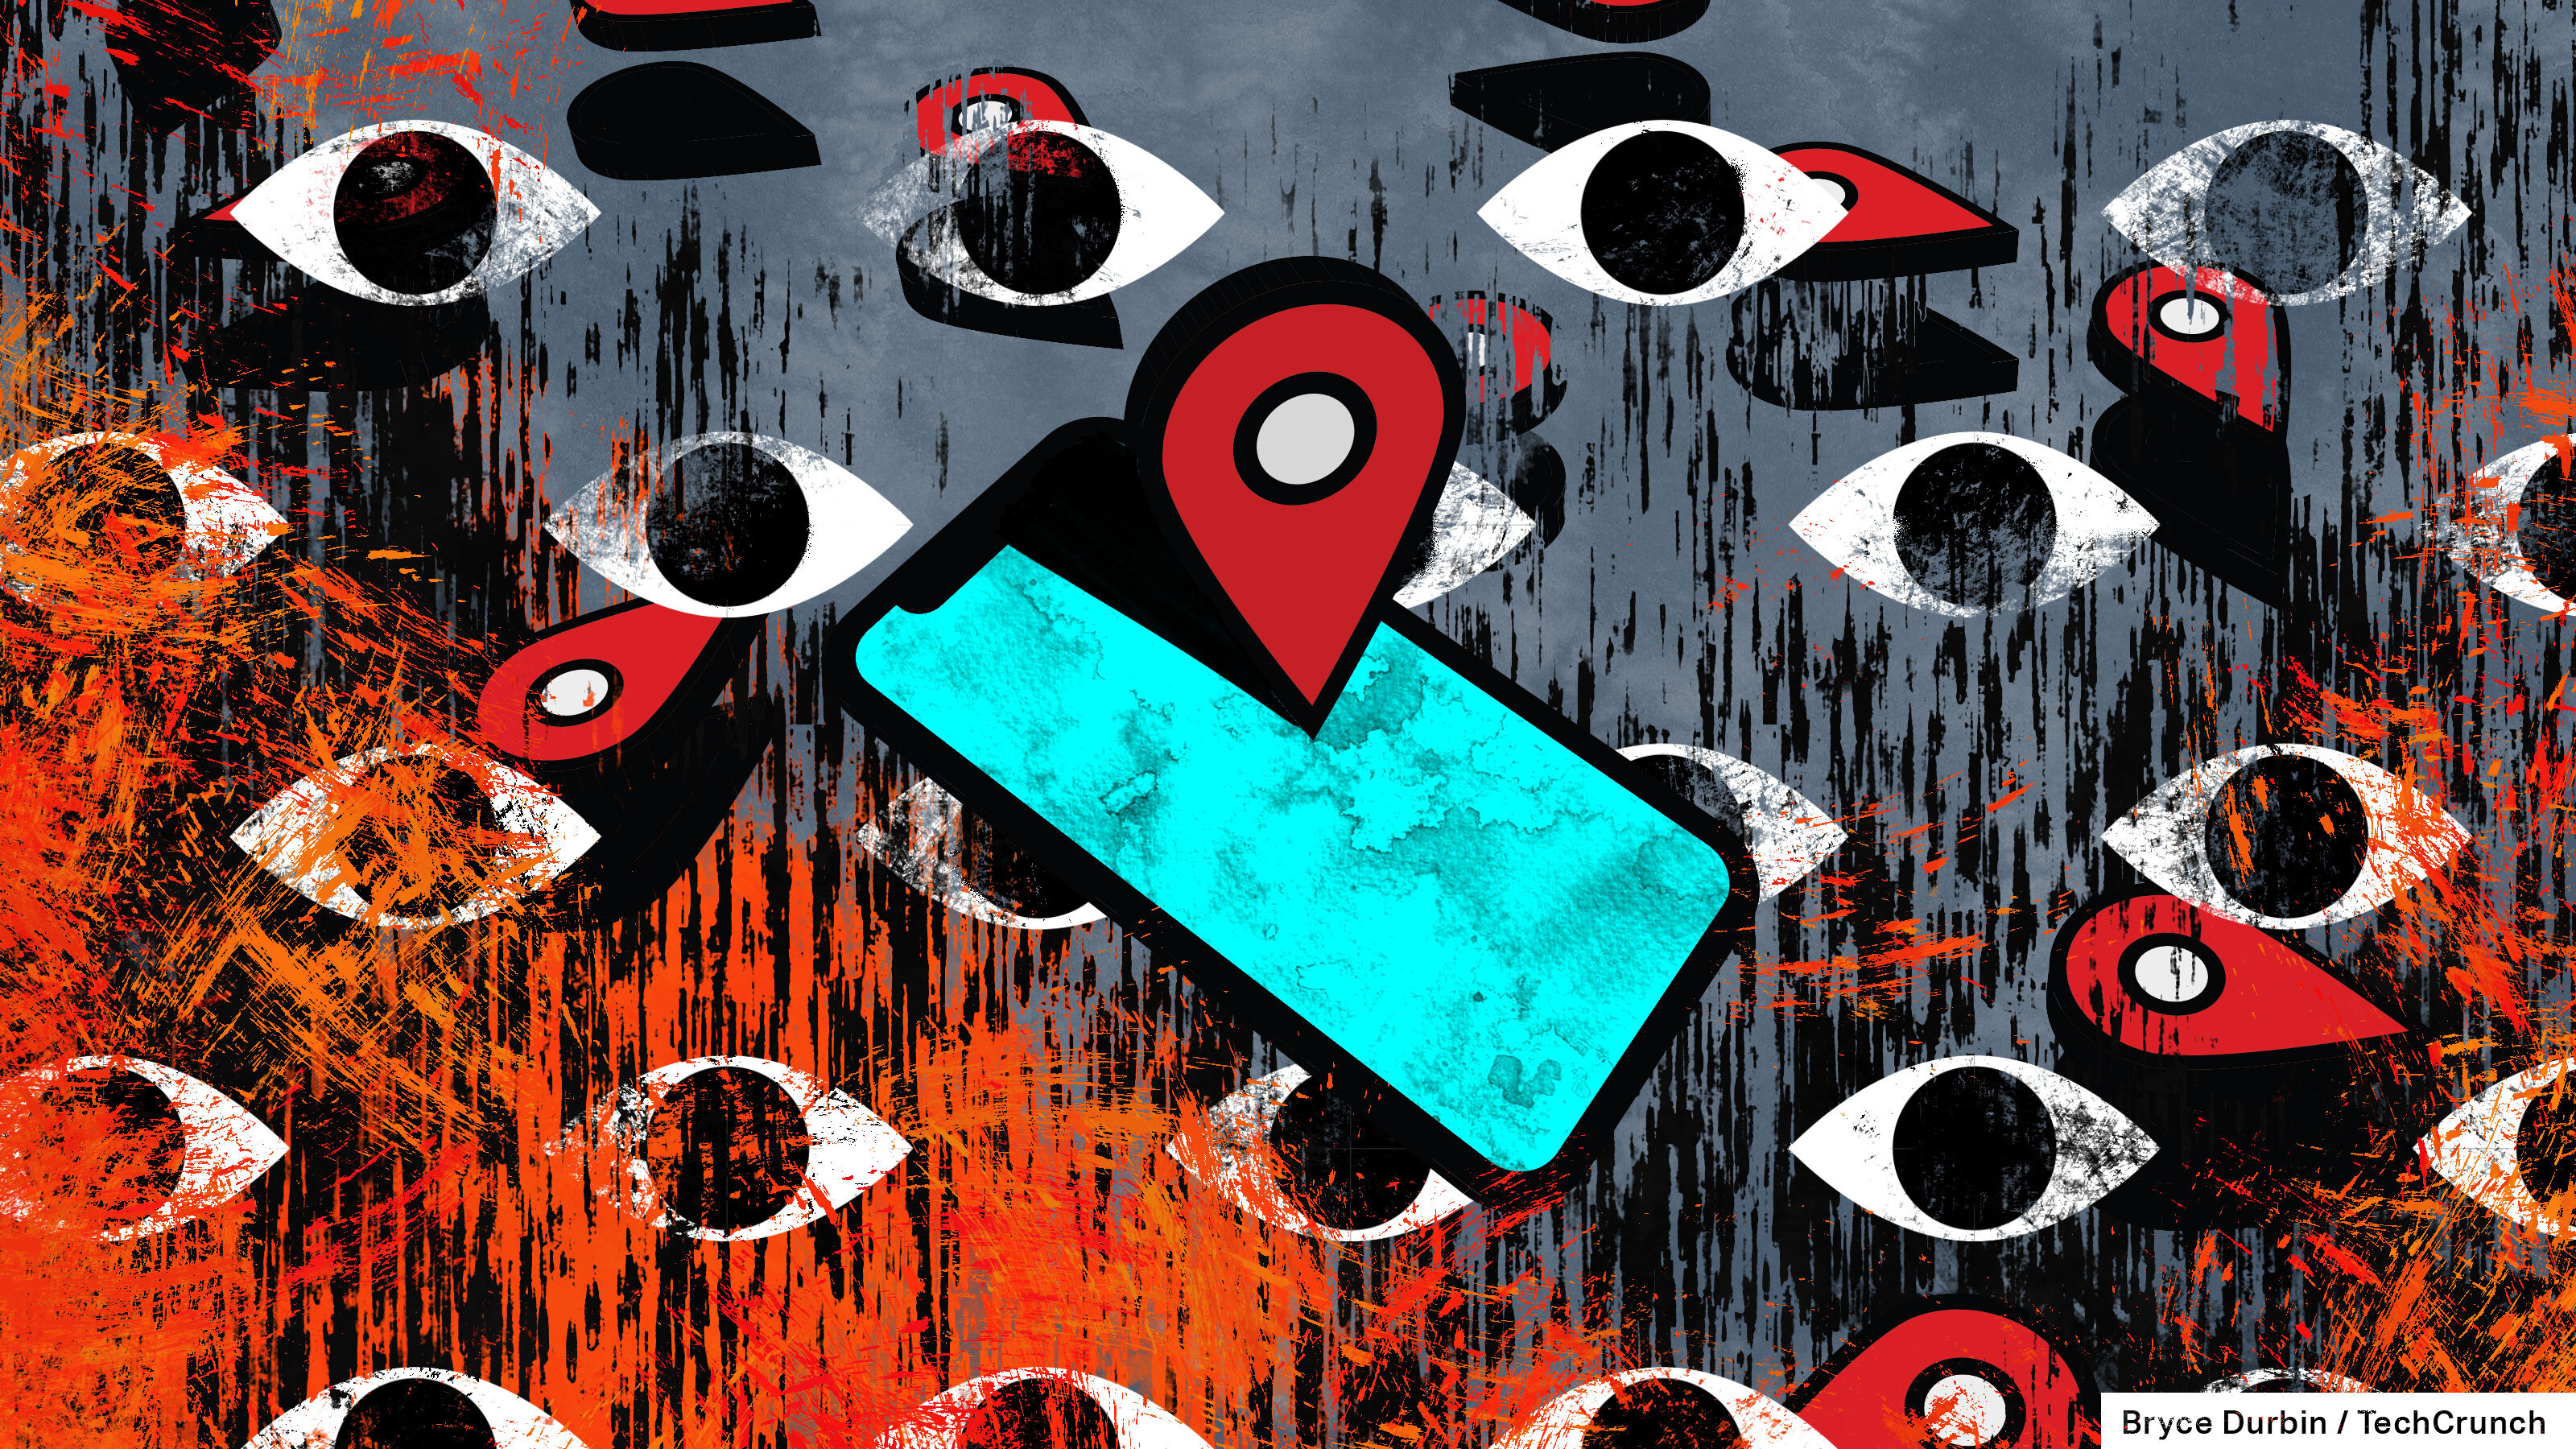 Une illustration d'un téléphone éclairé en bleu avec un pointeur d'emplacement dessus, sur un fond d'yeux mobiles rouges et bleus.